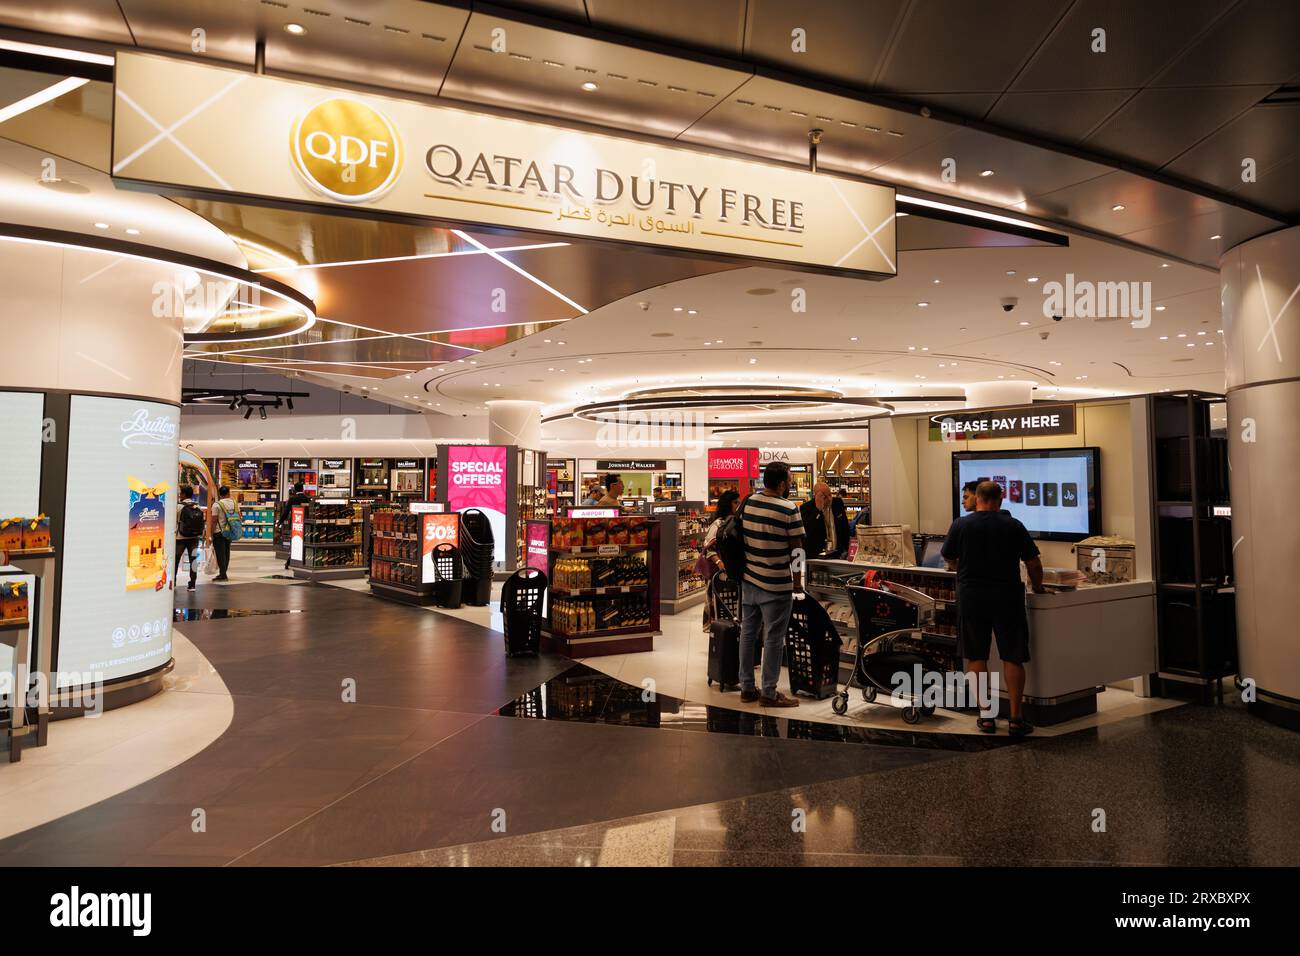 Qatar doha airport duty free -Fotos und -Bildmaterial in hoher Auflösung –  Alamy